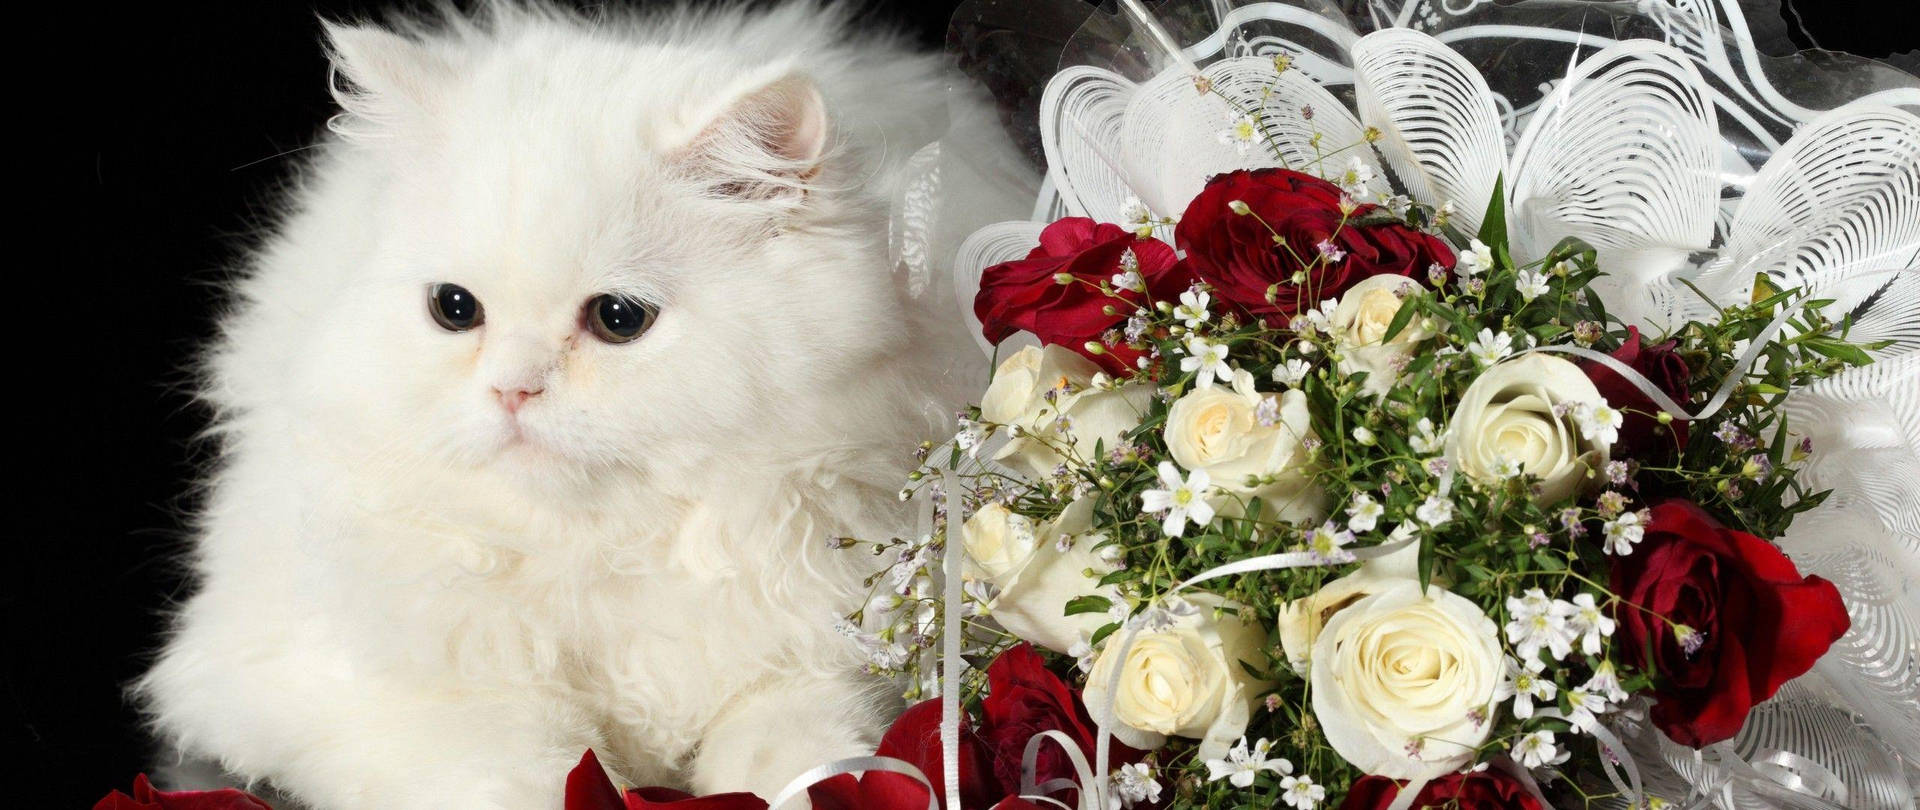 White Cat Love Rose Wallpaper